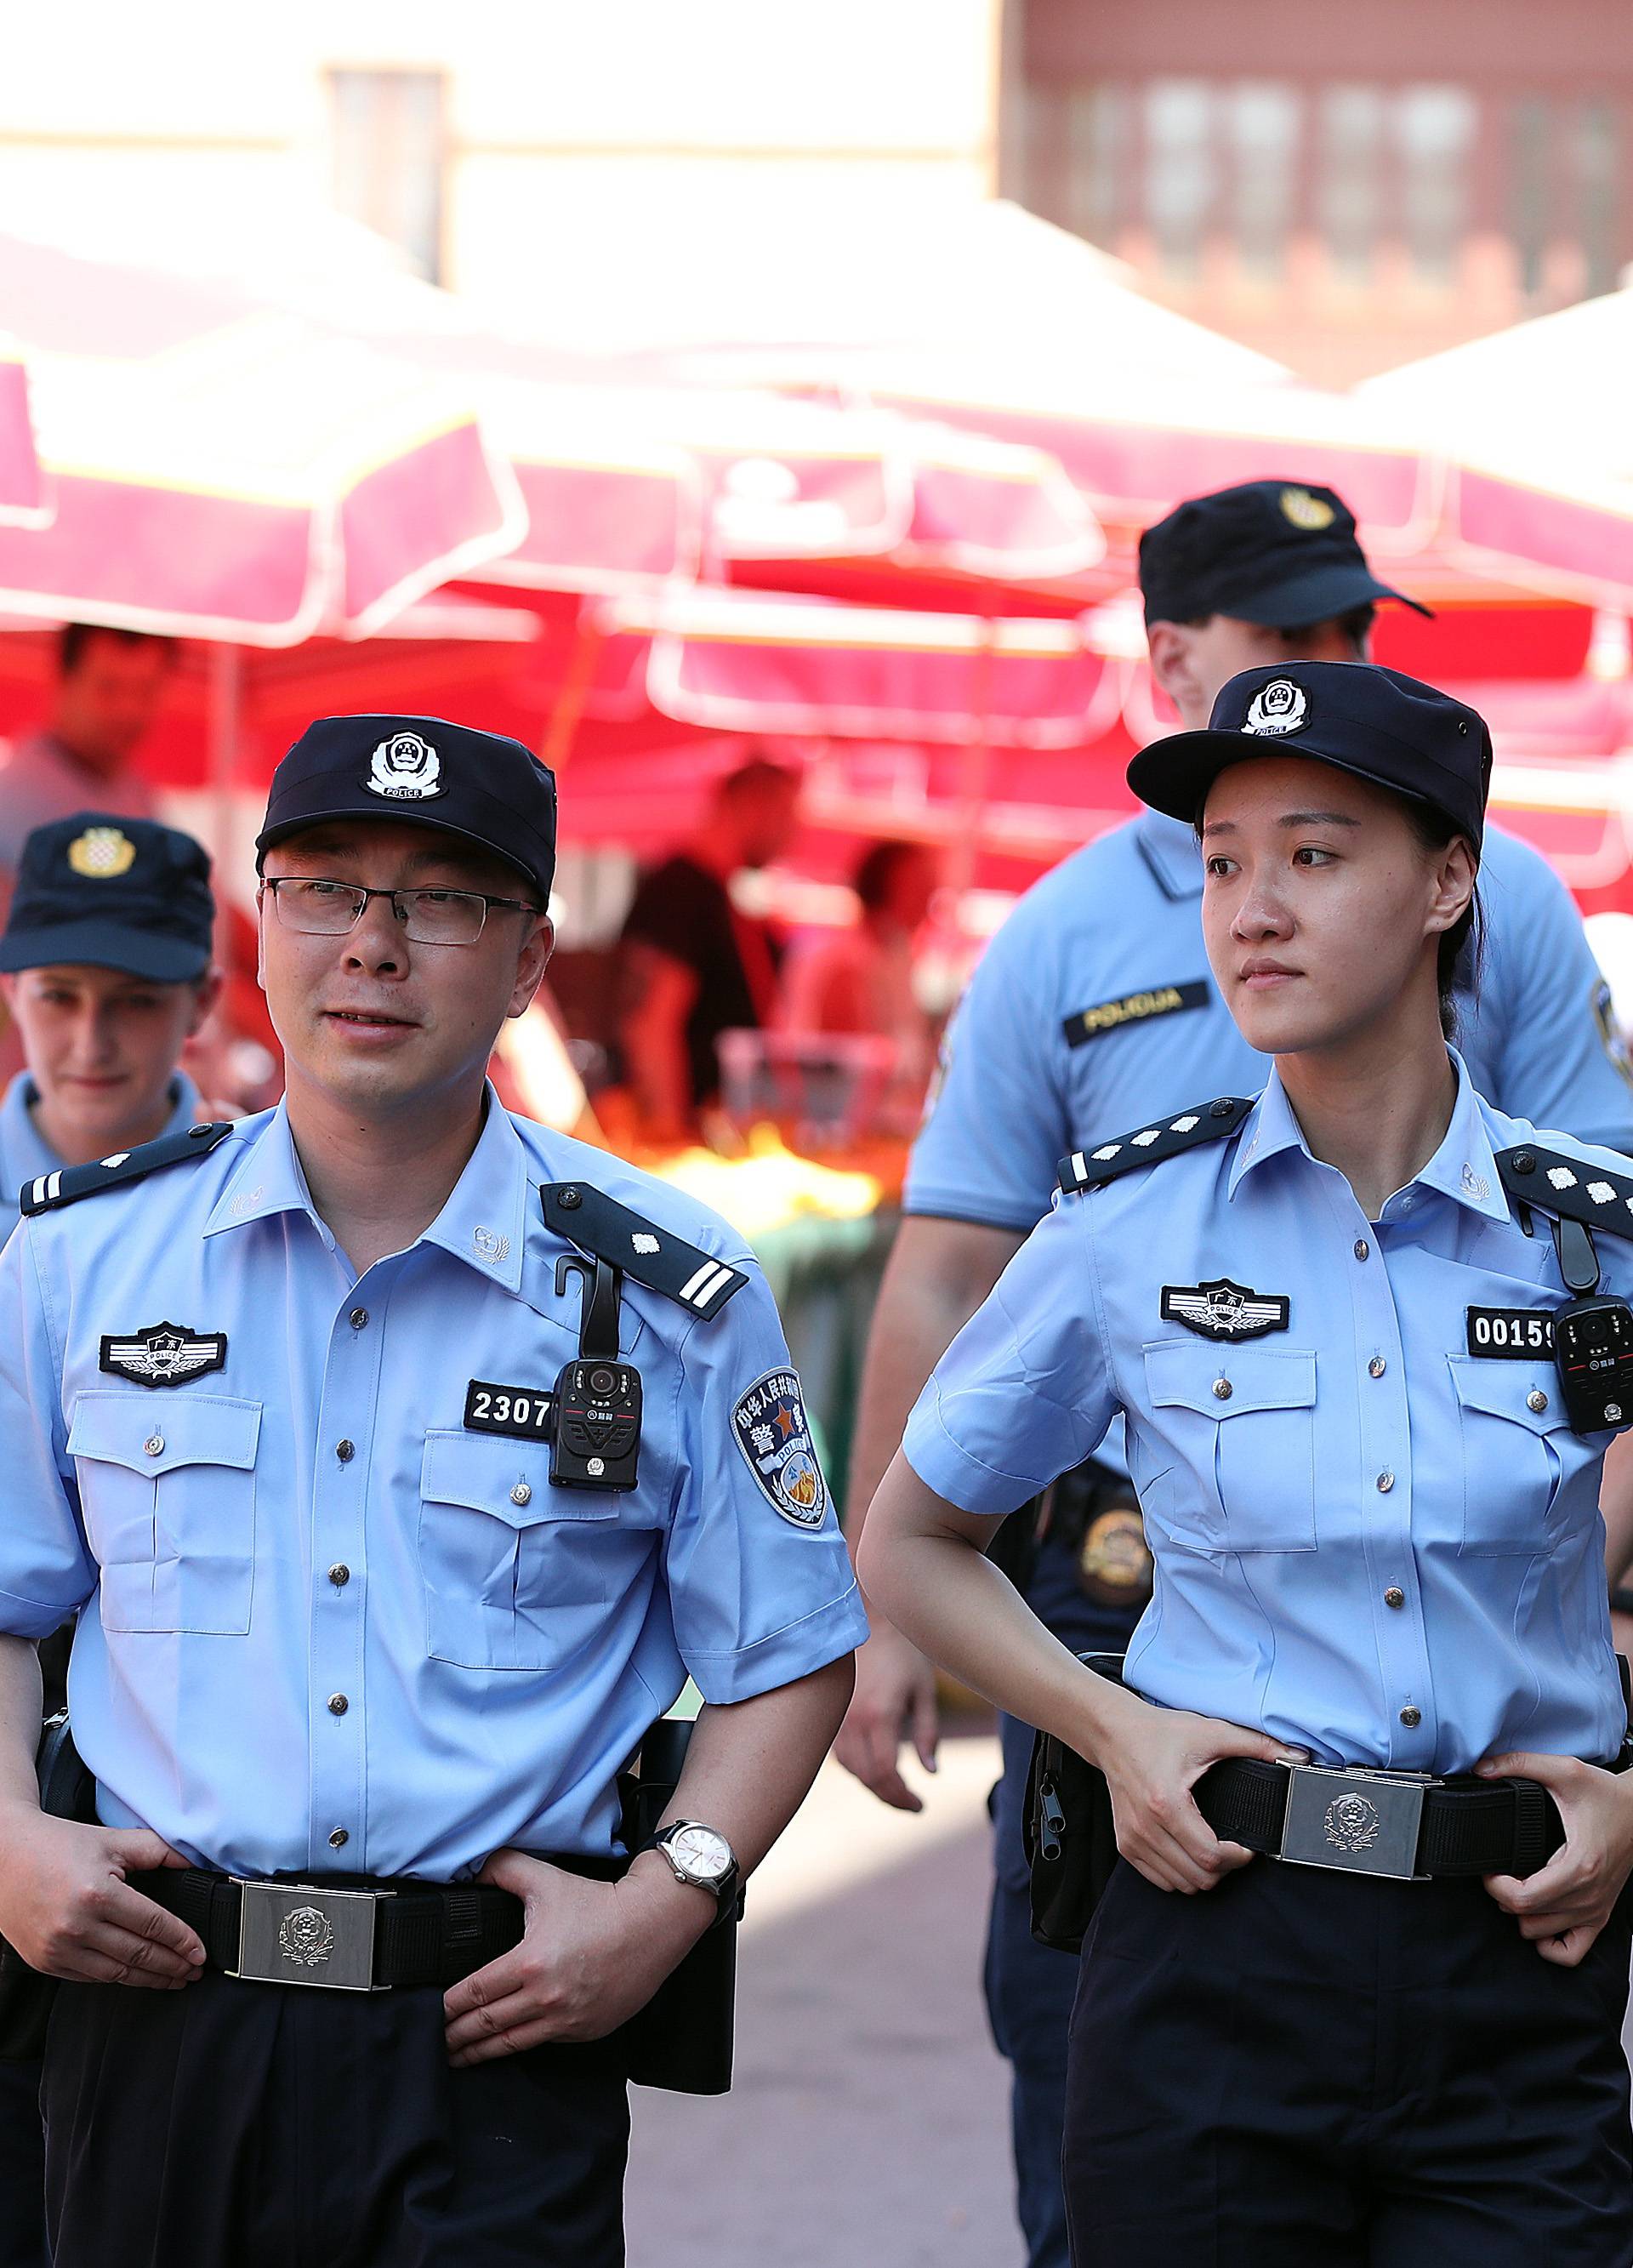 Kineski policajci u Zagrebu: 'Oprostite, može jedan selfie?'